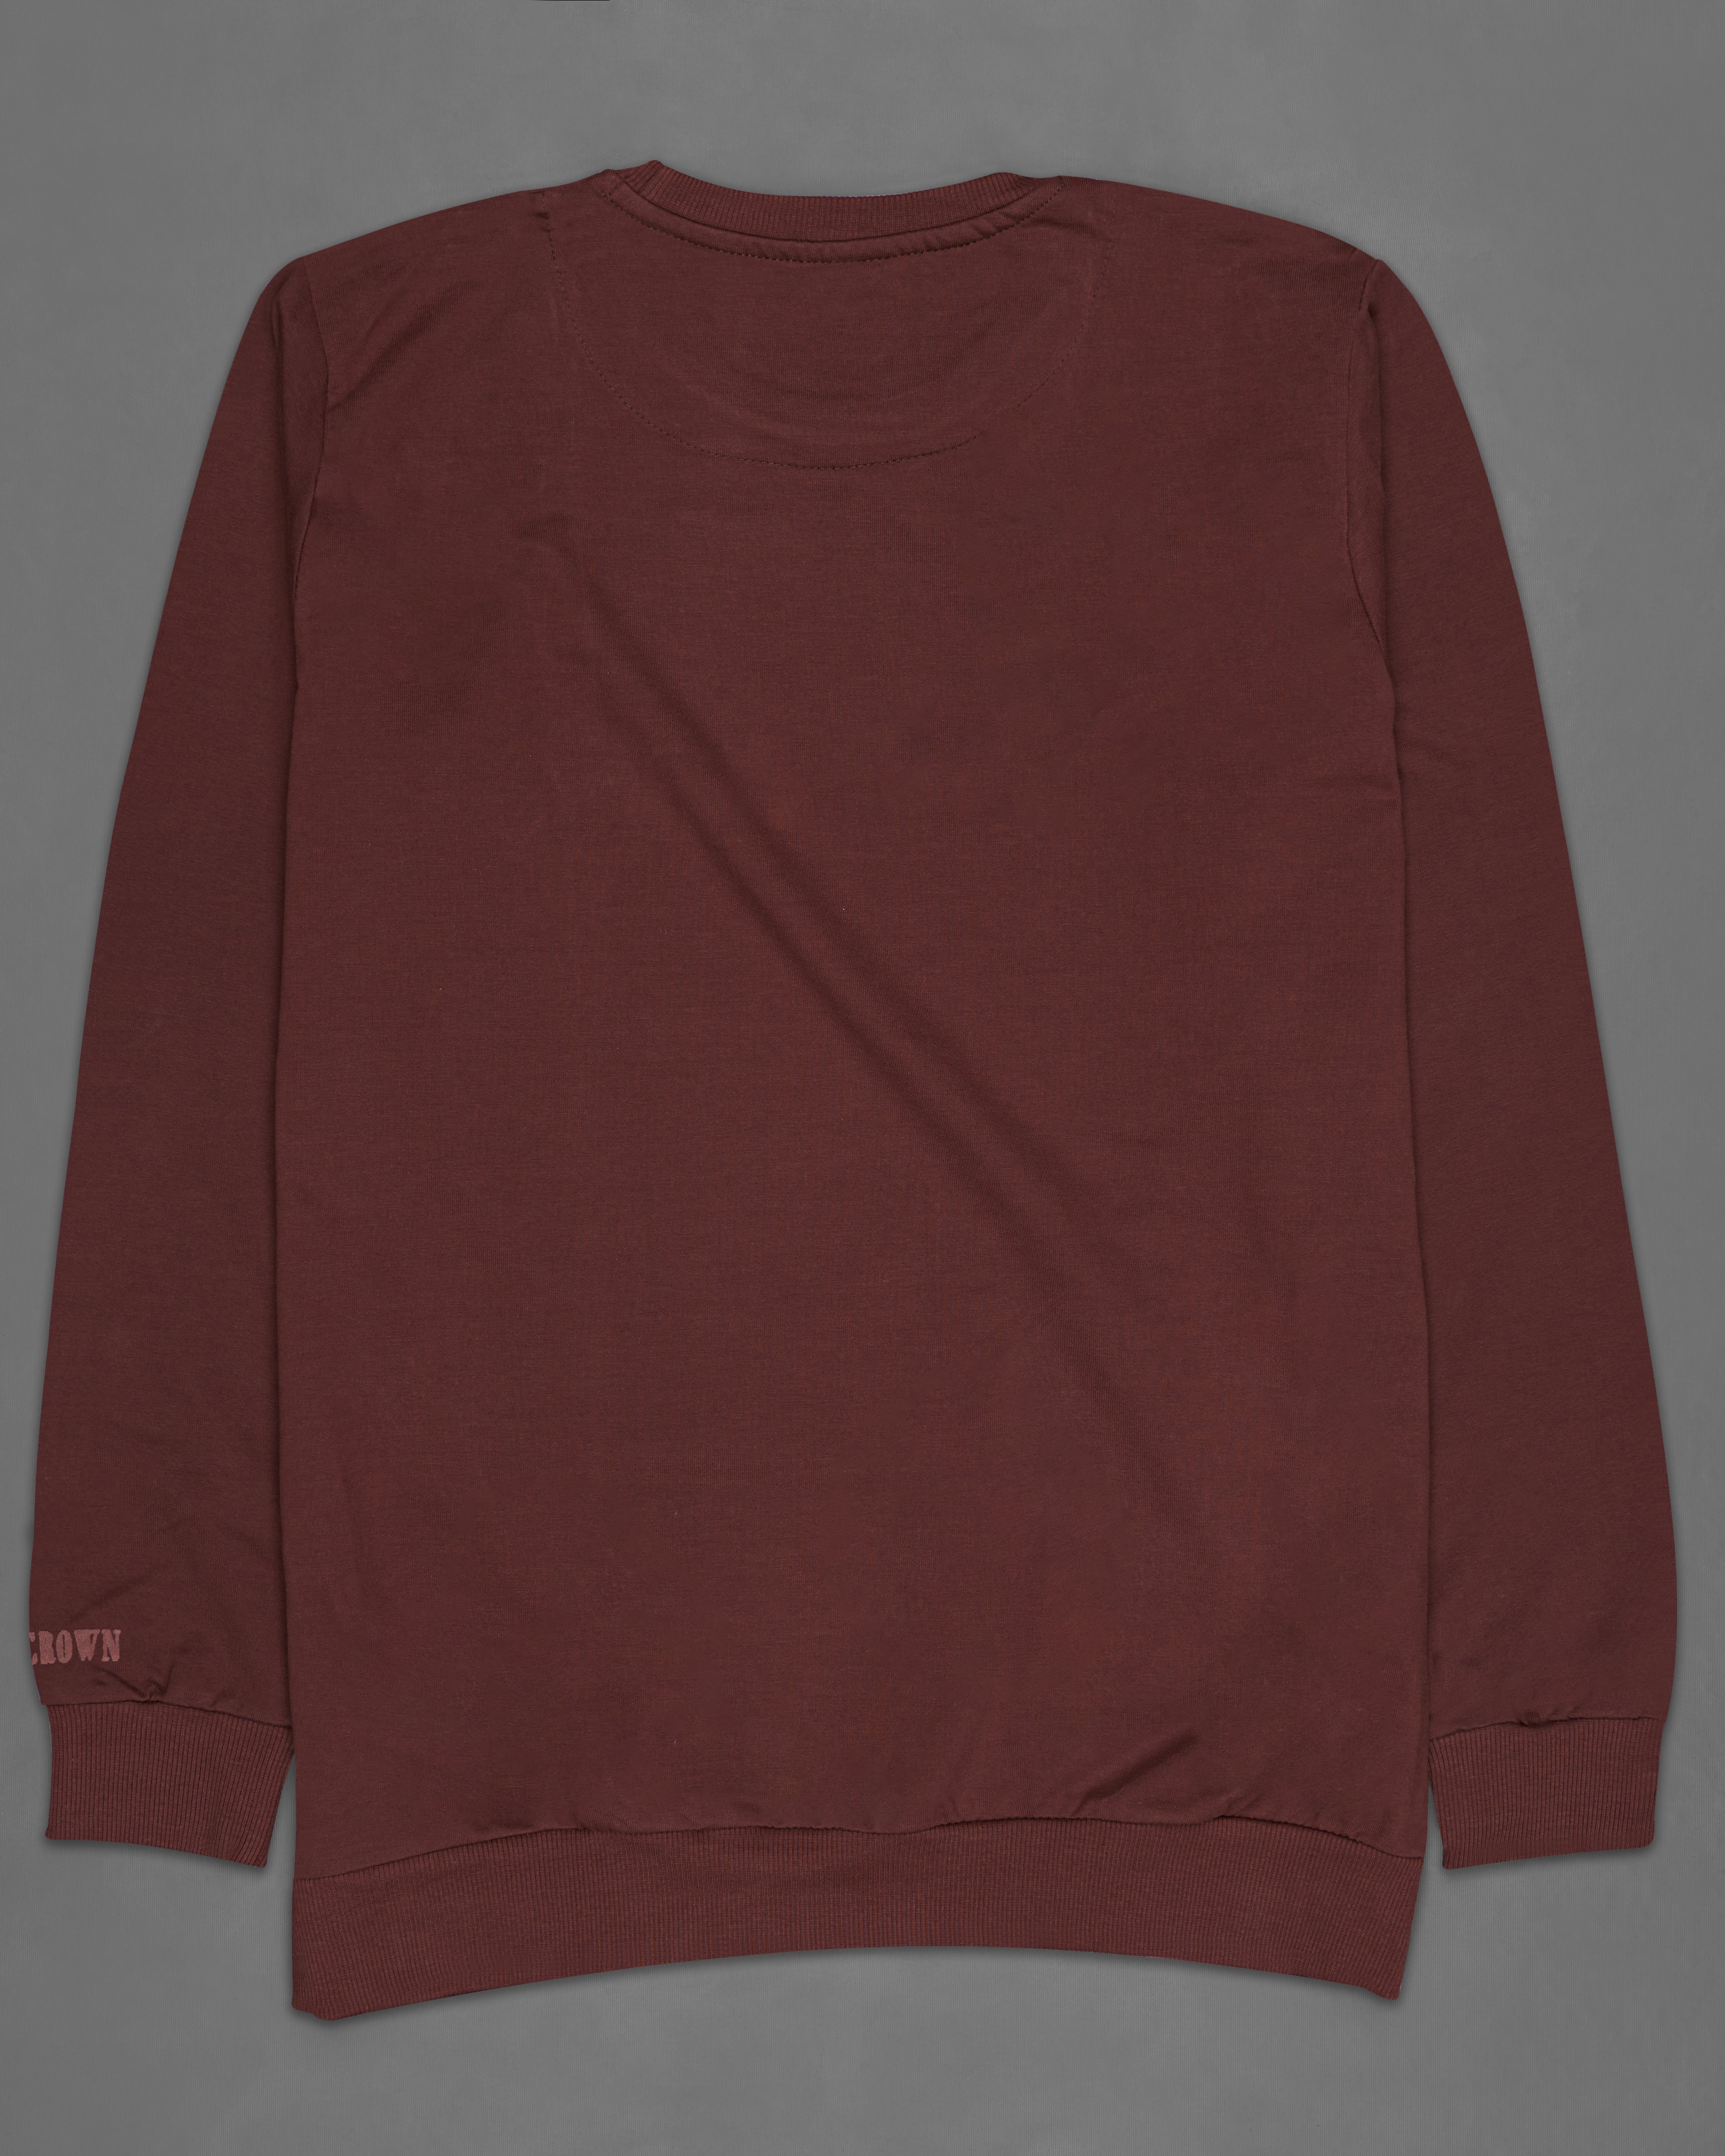 Cork Brown Embroidered Premium cotton Sweatshirt